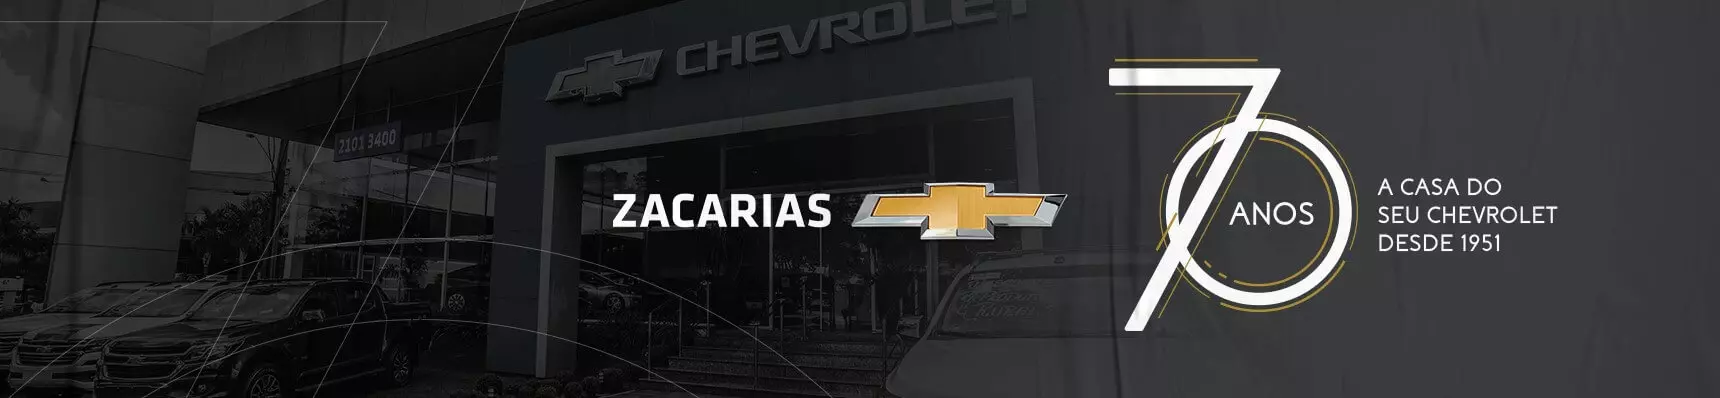 Venda e ofertas de carros novos e seminovos na concessionária Chevrolet Zacarias de Cascavel. Peças genuínas GM, acessórios automotivos originais e serviços de manutenção e revisão de veículos.